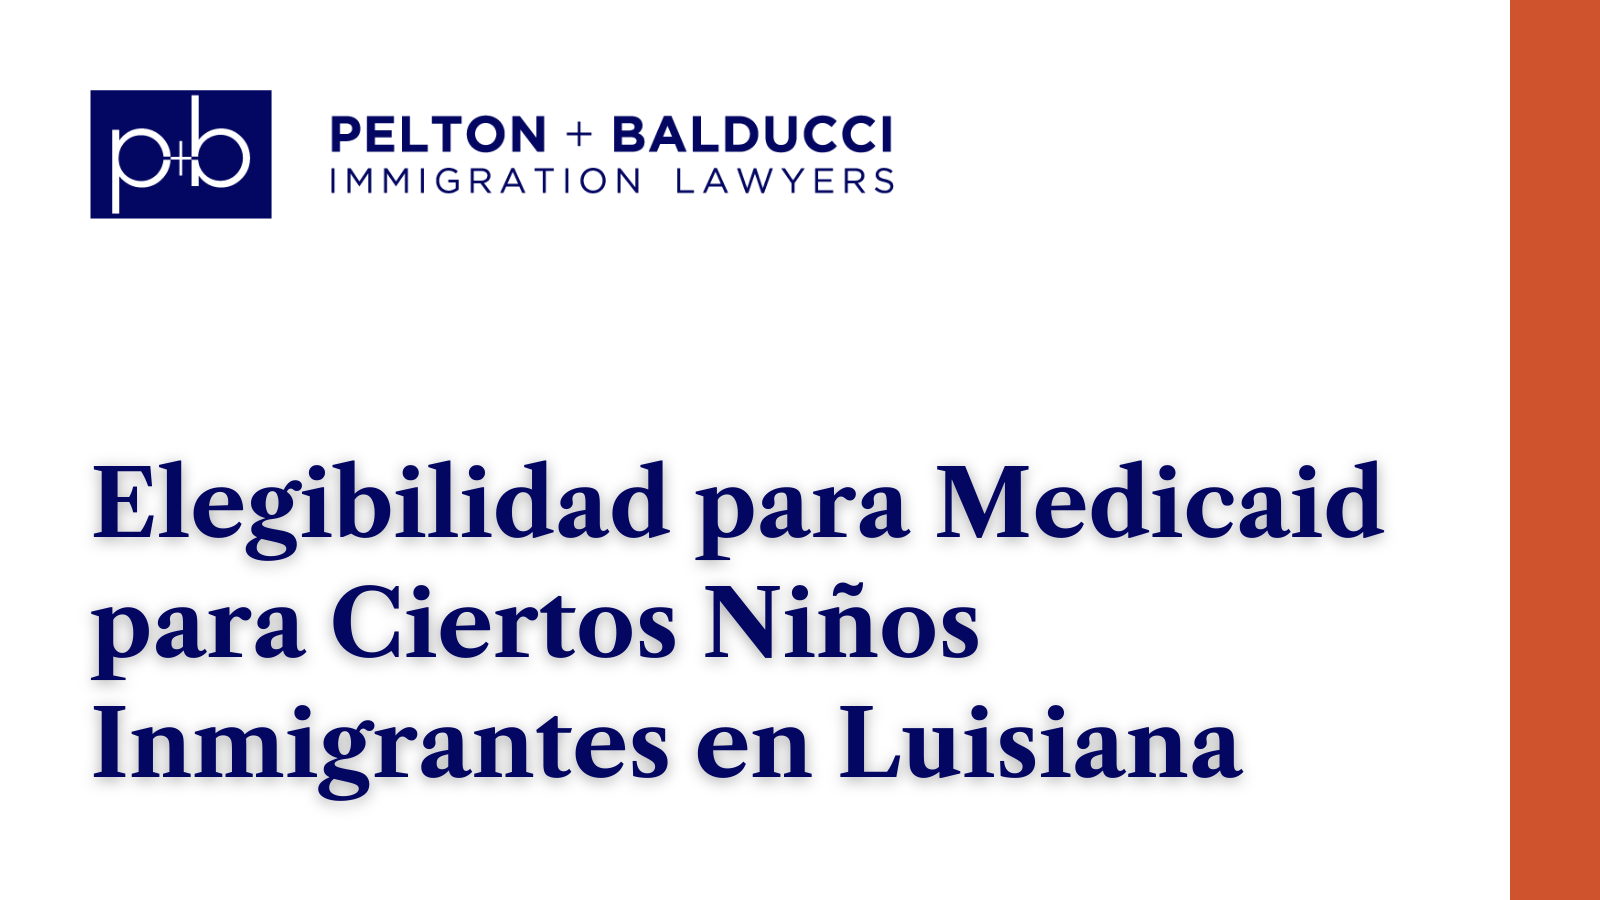 Elegibilidad para Medicaid para Ciertos Niños Inmigrantes en Luisiana - New Orleans Immigration Lawyers - Pelton Balducci